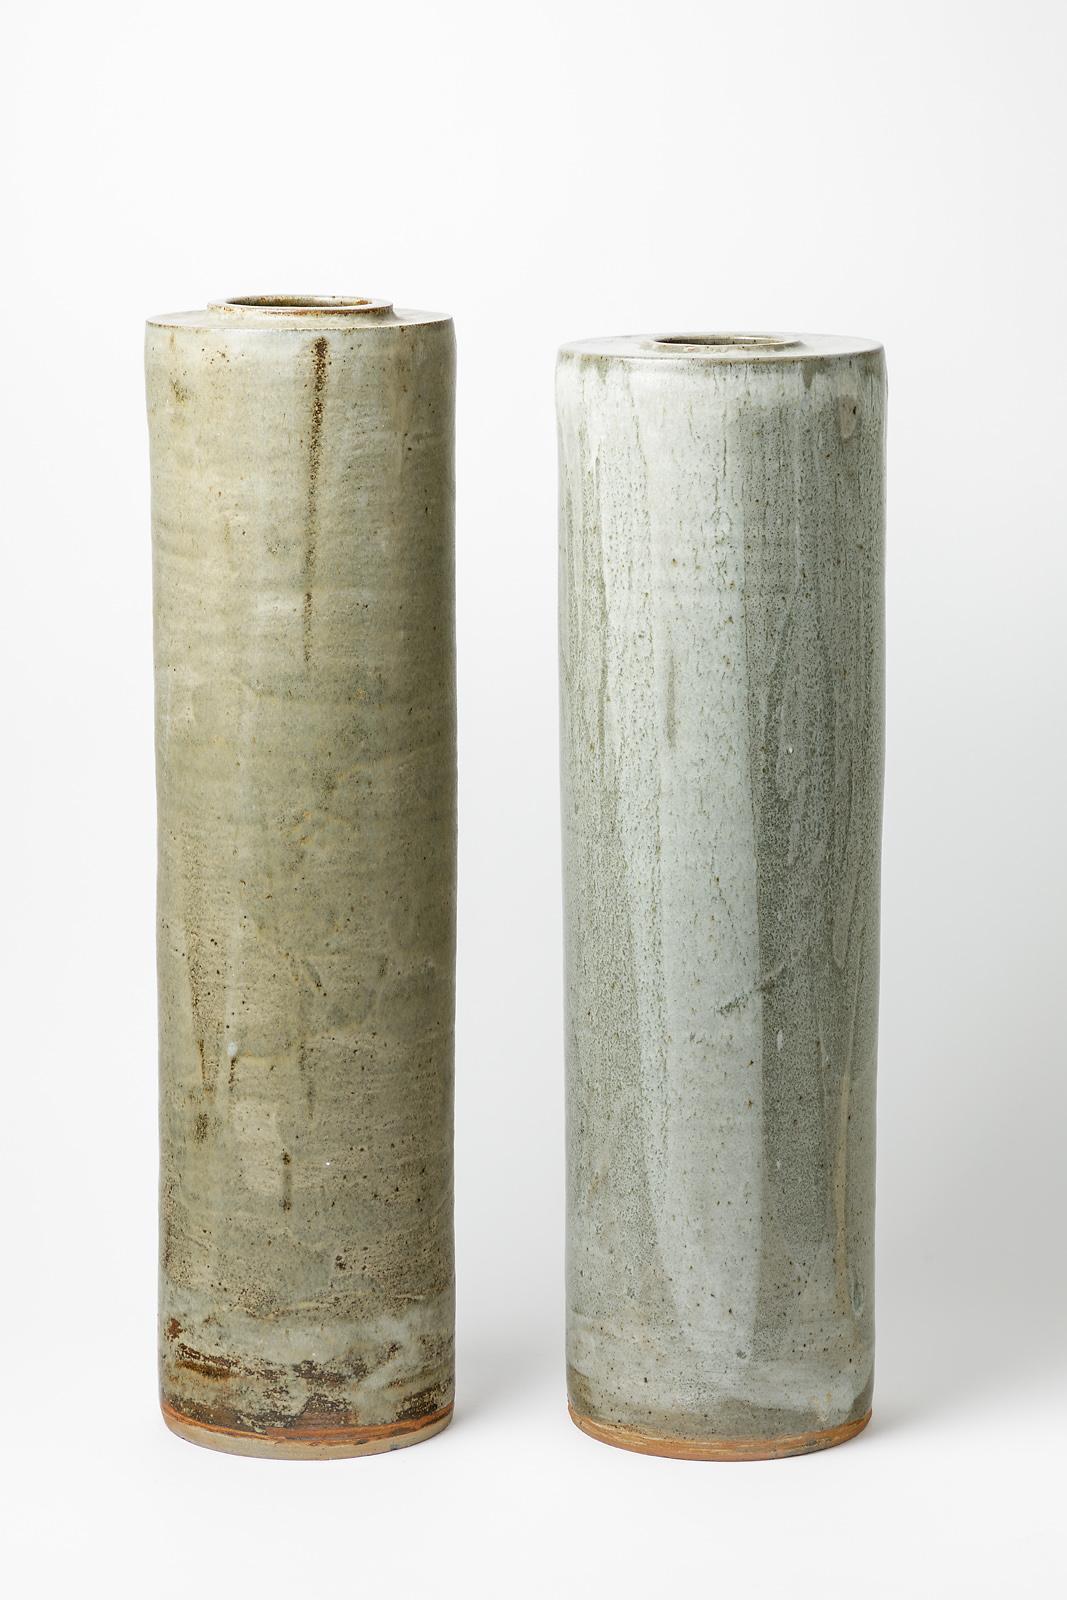 Paire de vases en céramique à décor de glaçures grises, beiges et blanches par Robert Whiting.
Un vase est plus petit.
Conditions d'origine parfaites.
Signé sous la base.
Circa 1980.
Pièce unique.
Dimensions :
- 63 cm x 17 cm / 25' x 6' 7